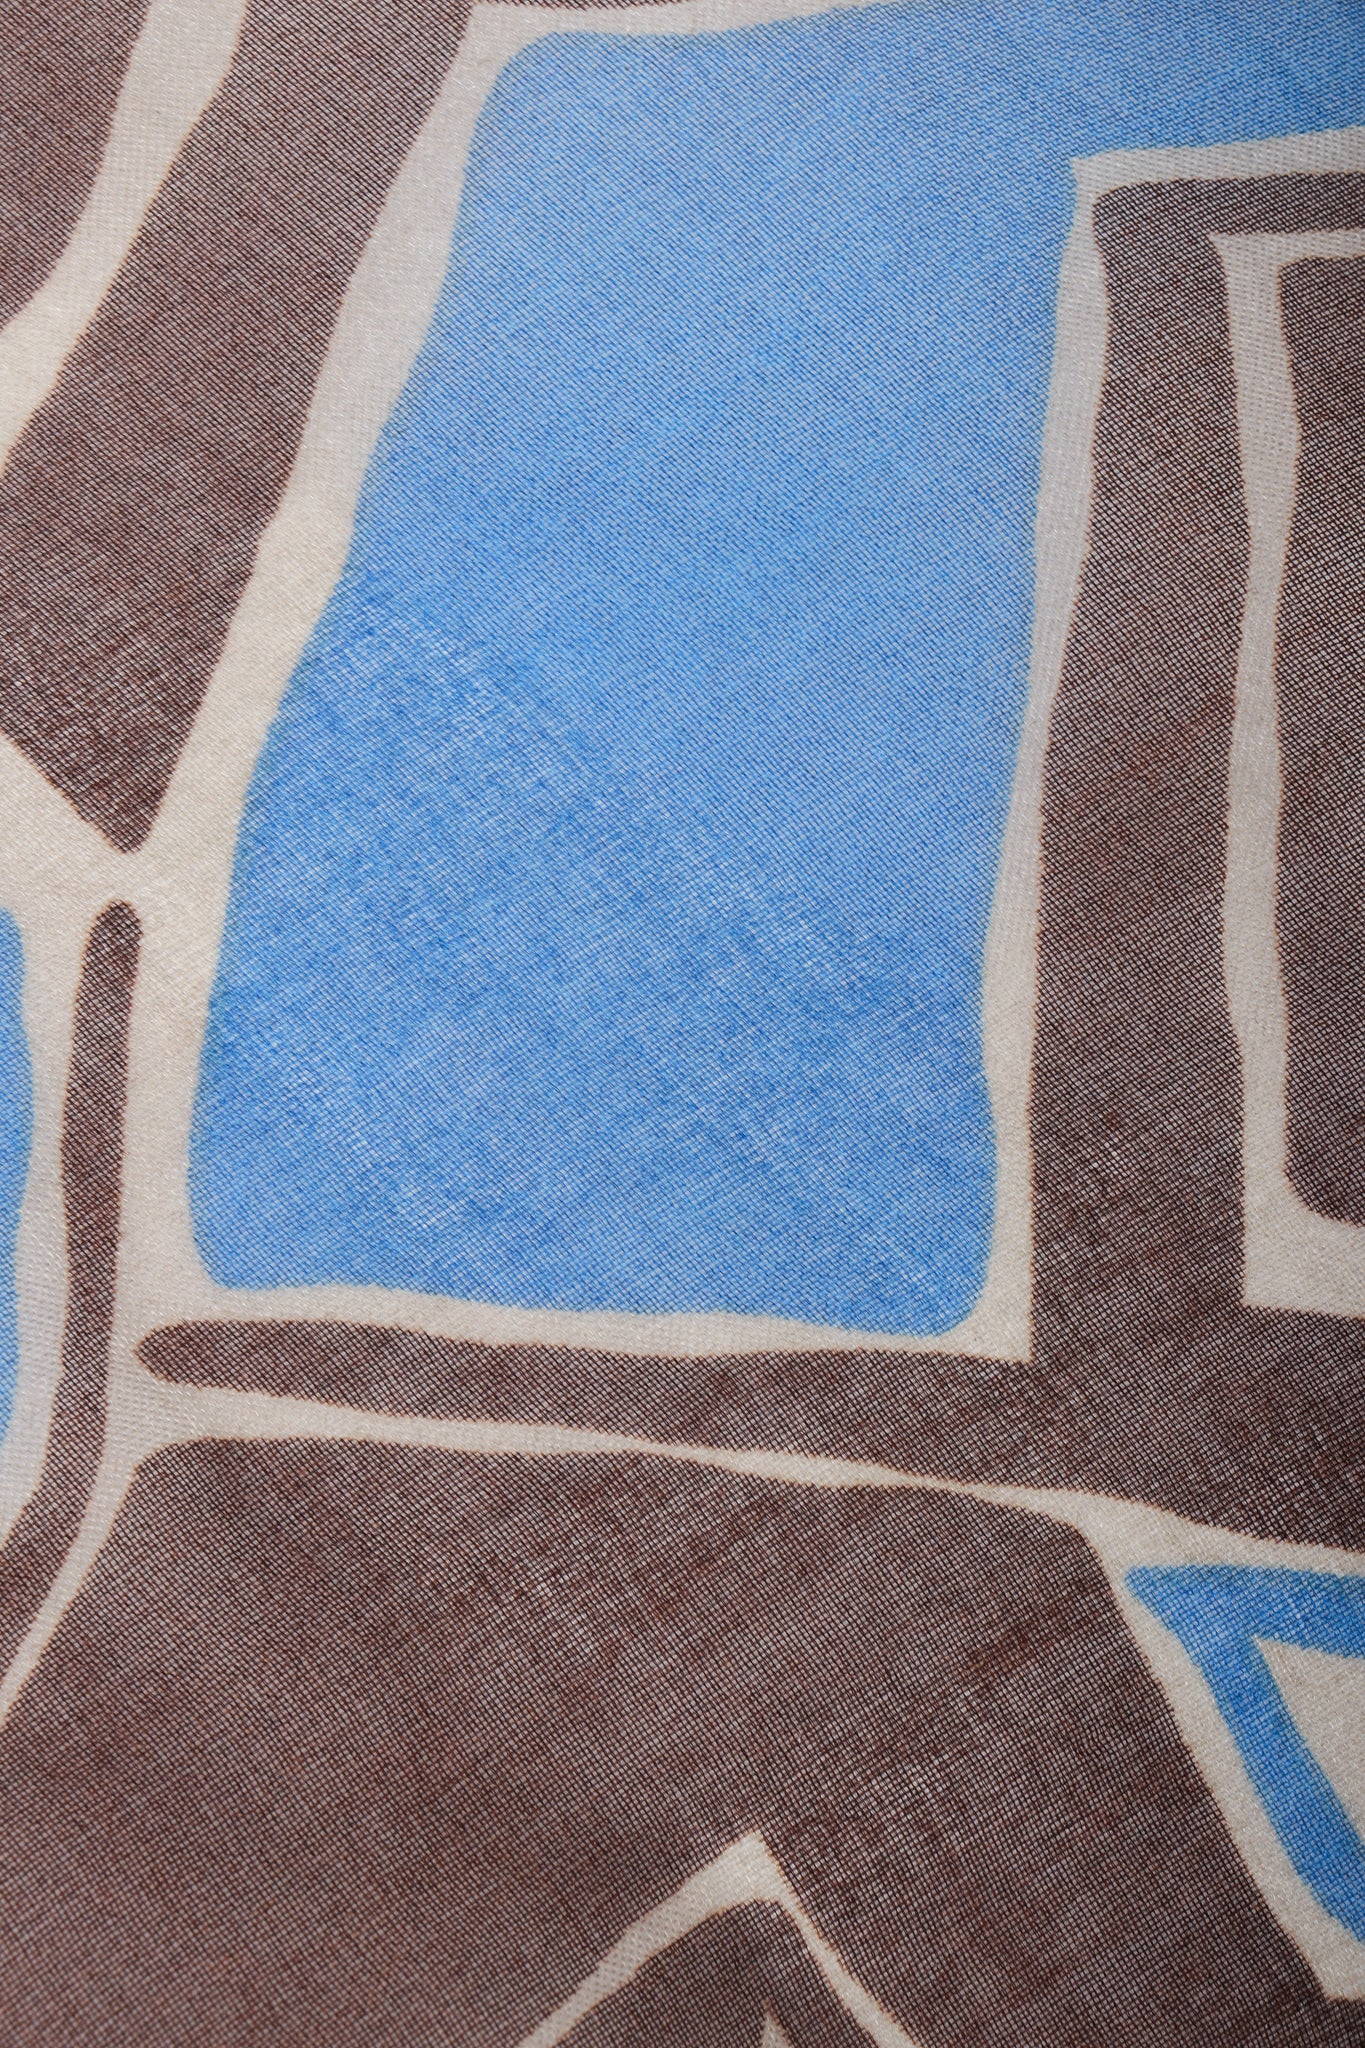 Vintage Yves Saint Laurent YSL Rive Gauche Wax Print Ankara Organza fabric wear